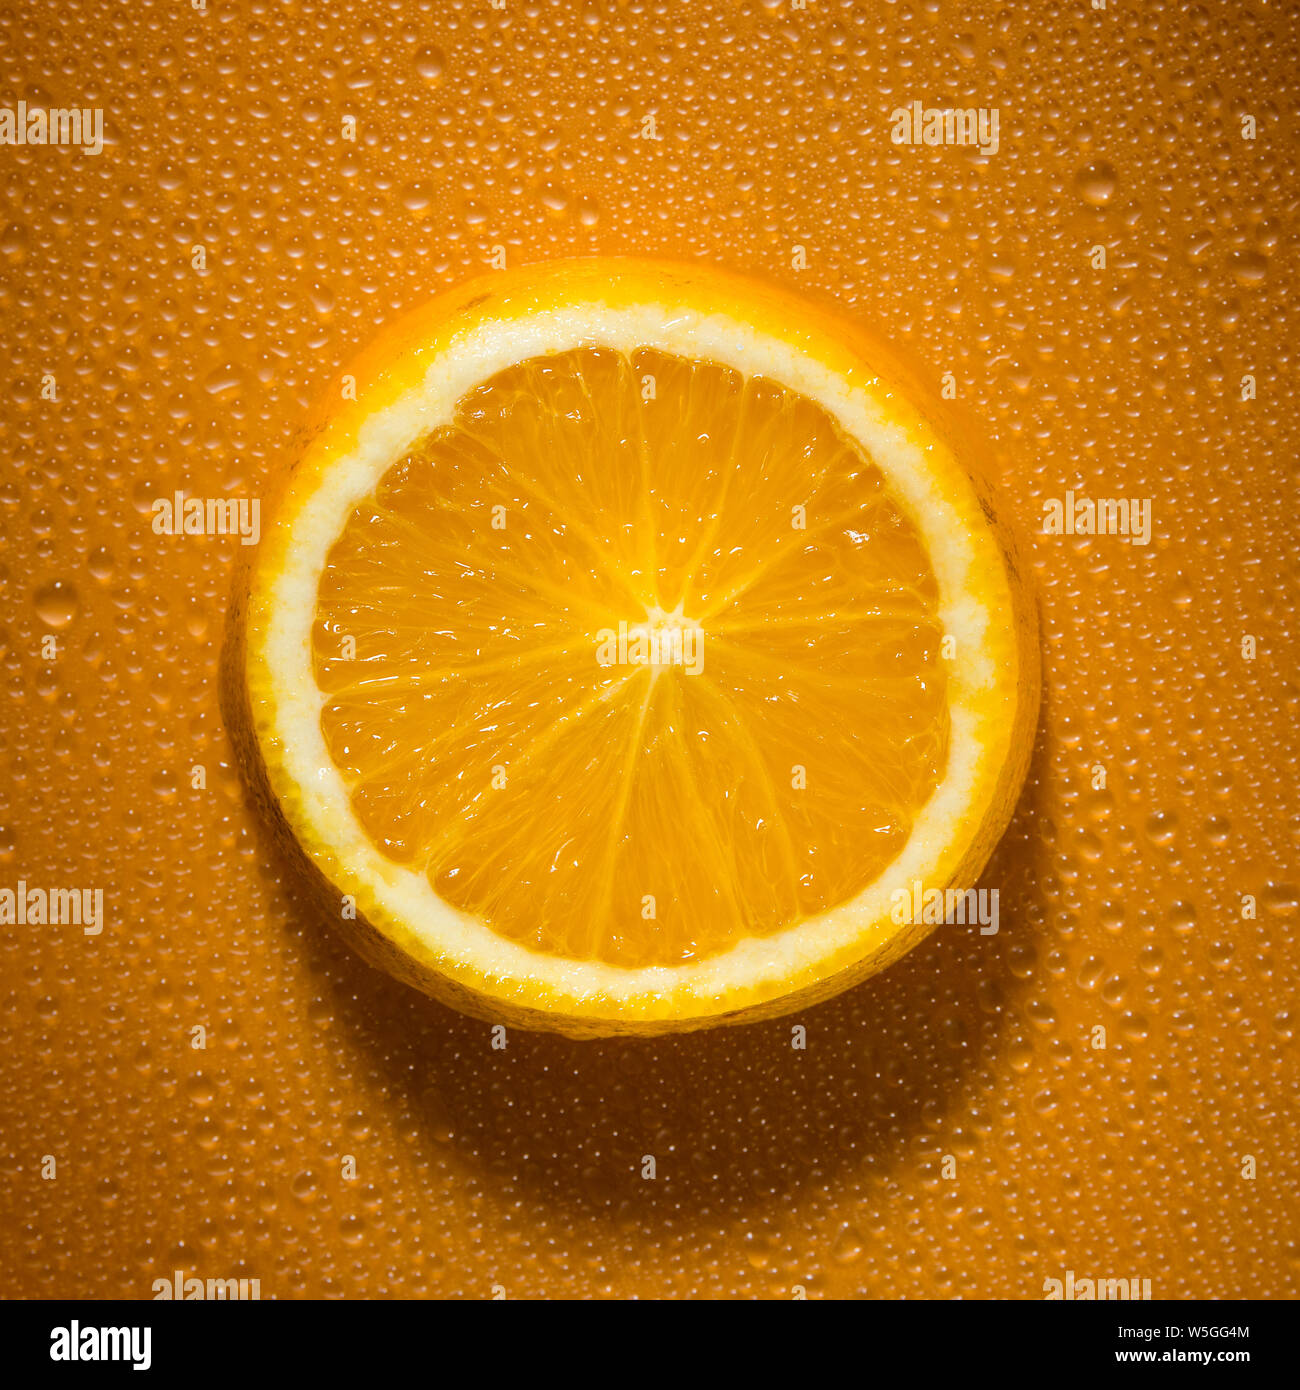 Scheibe Orange auf orange farbigen Hintergrund mit Wassertropfen erzeugen Textur - frisches und gesundes Essen Konzept Bild Stockfoto